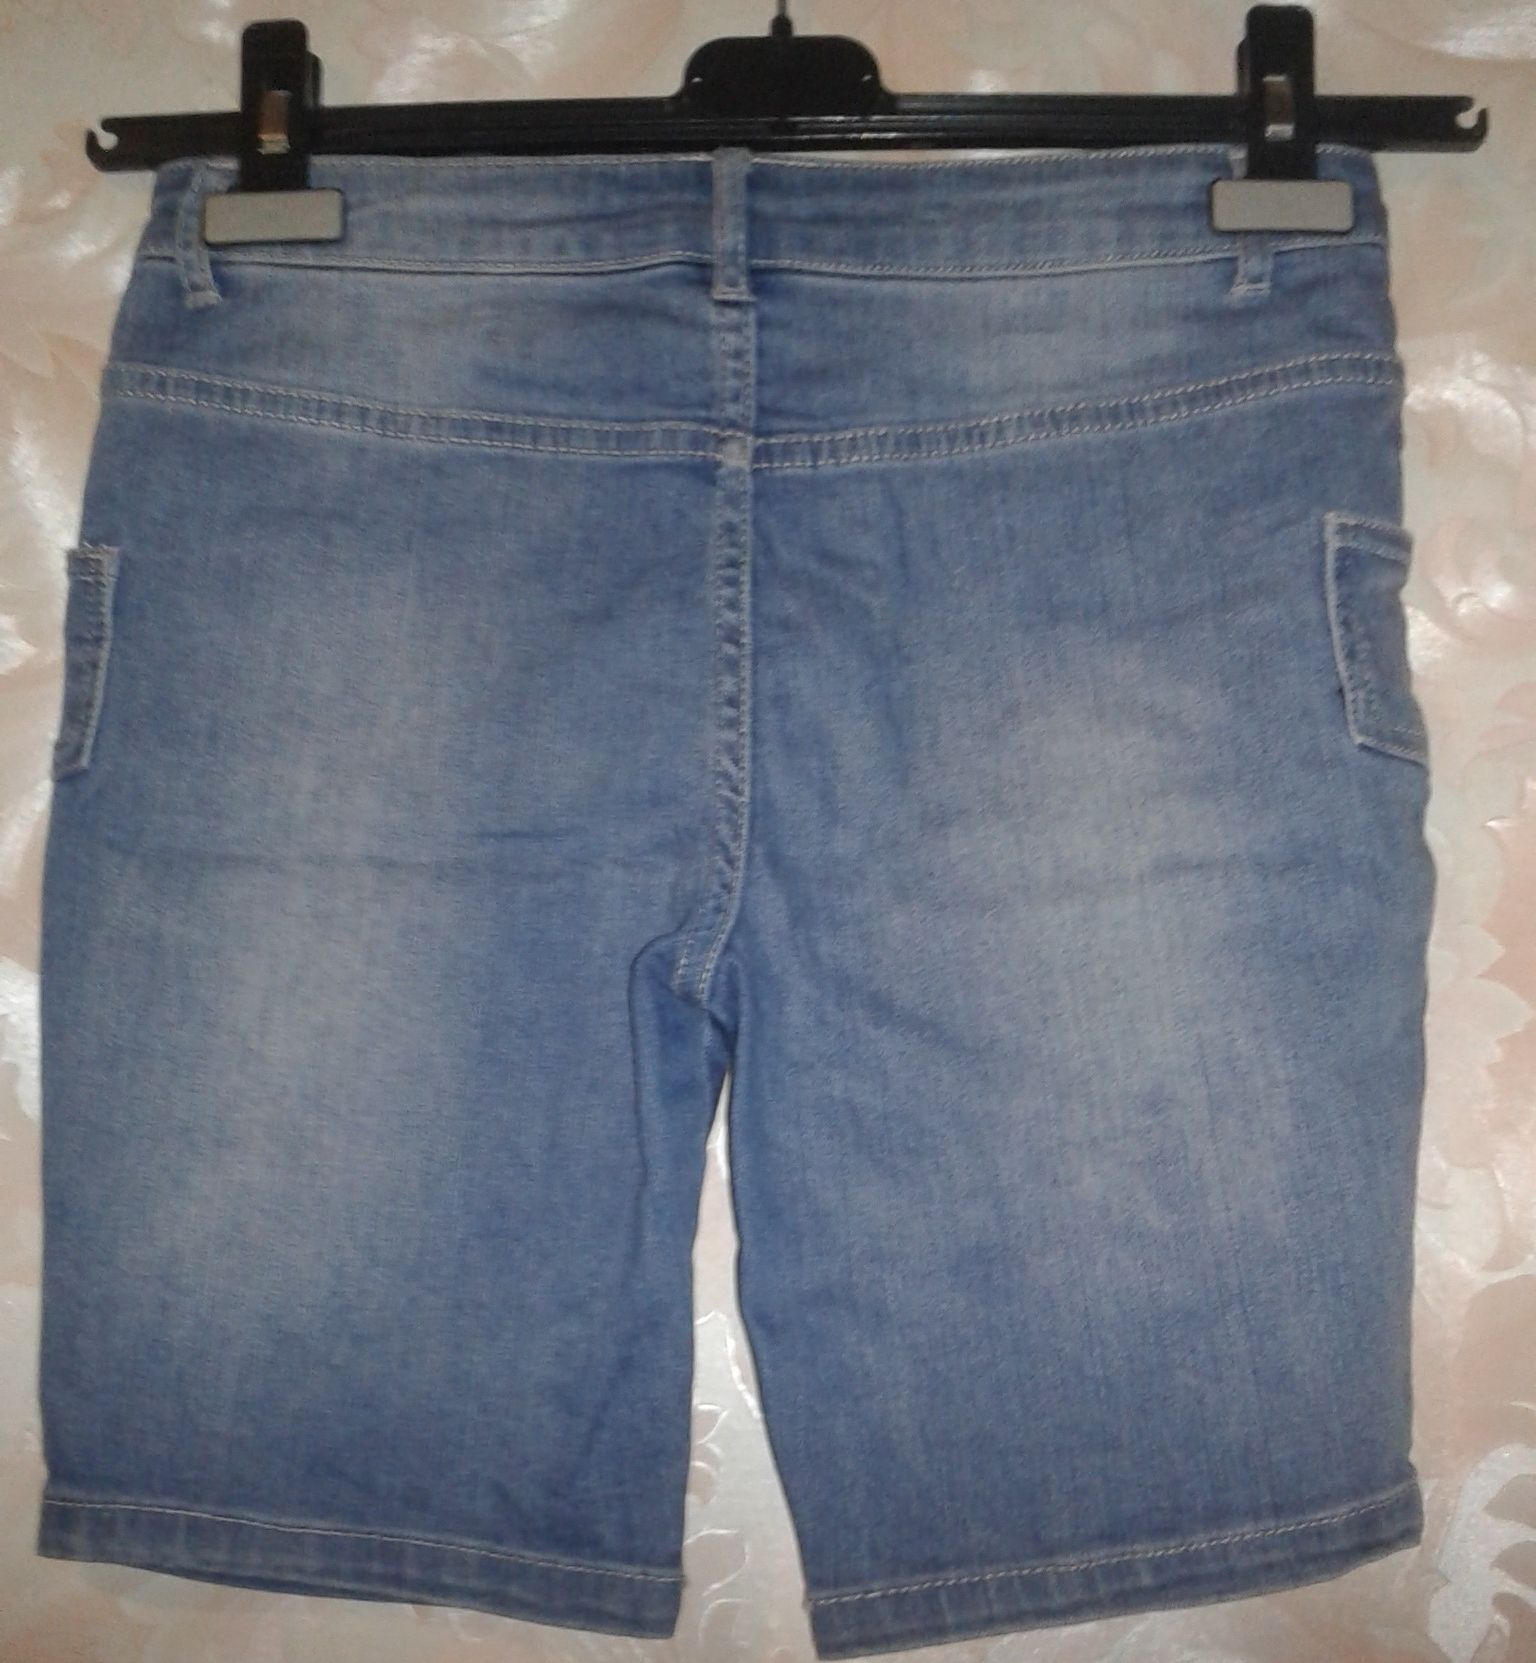 Женские шорты стрейч на девушку 14-16 лет XS-S размер